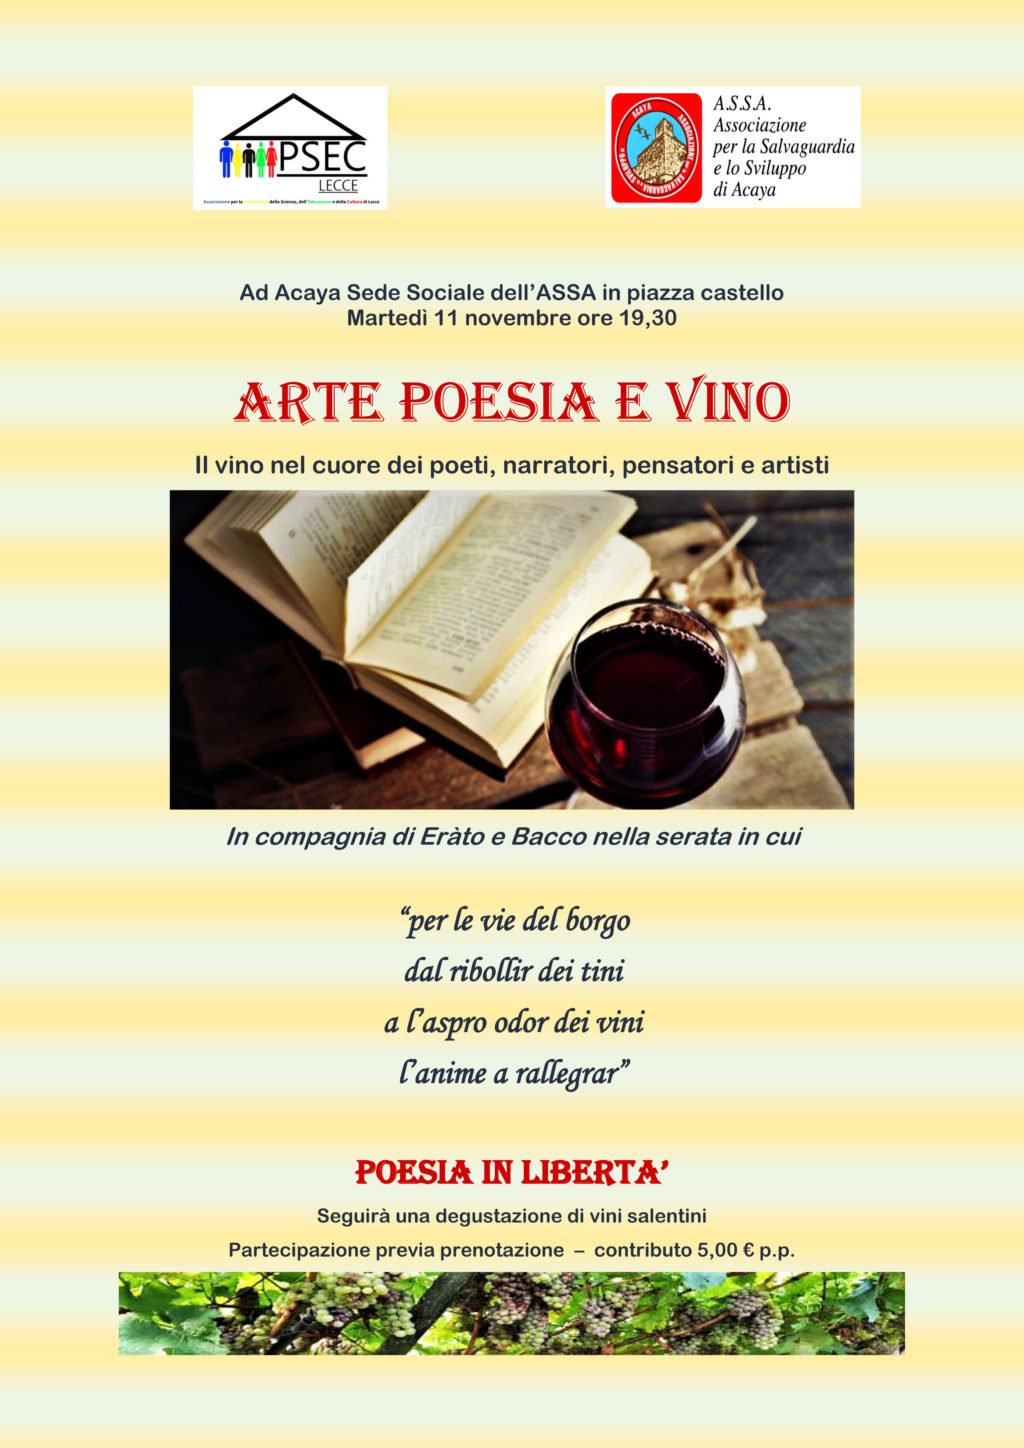 Evento Arte poesia e vino